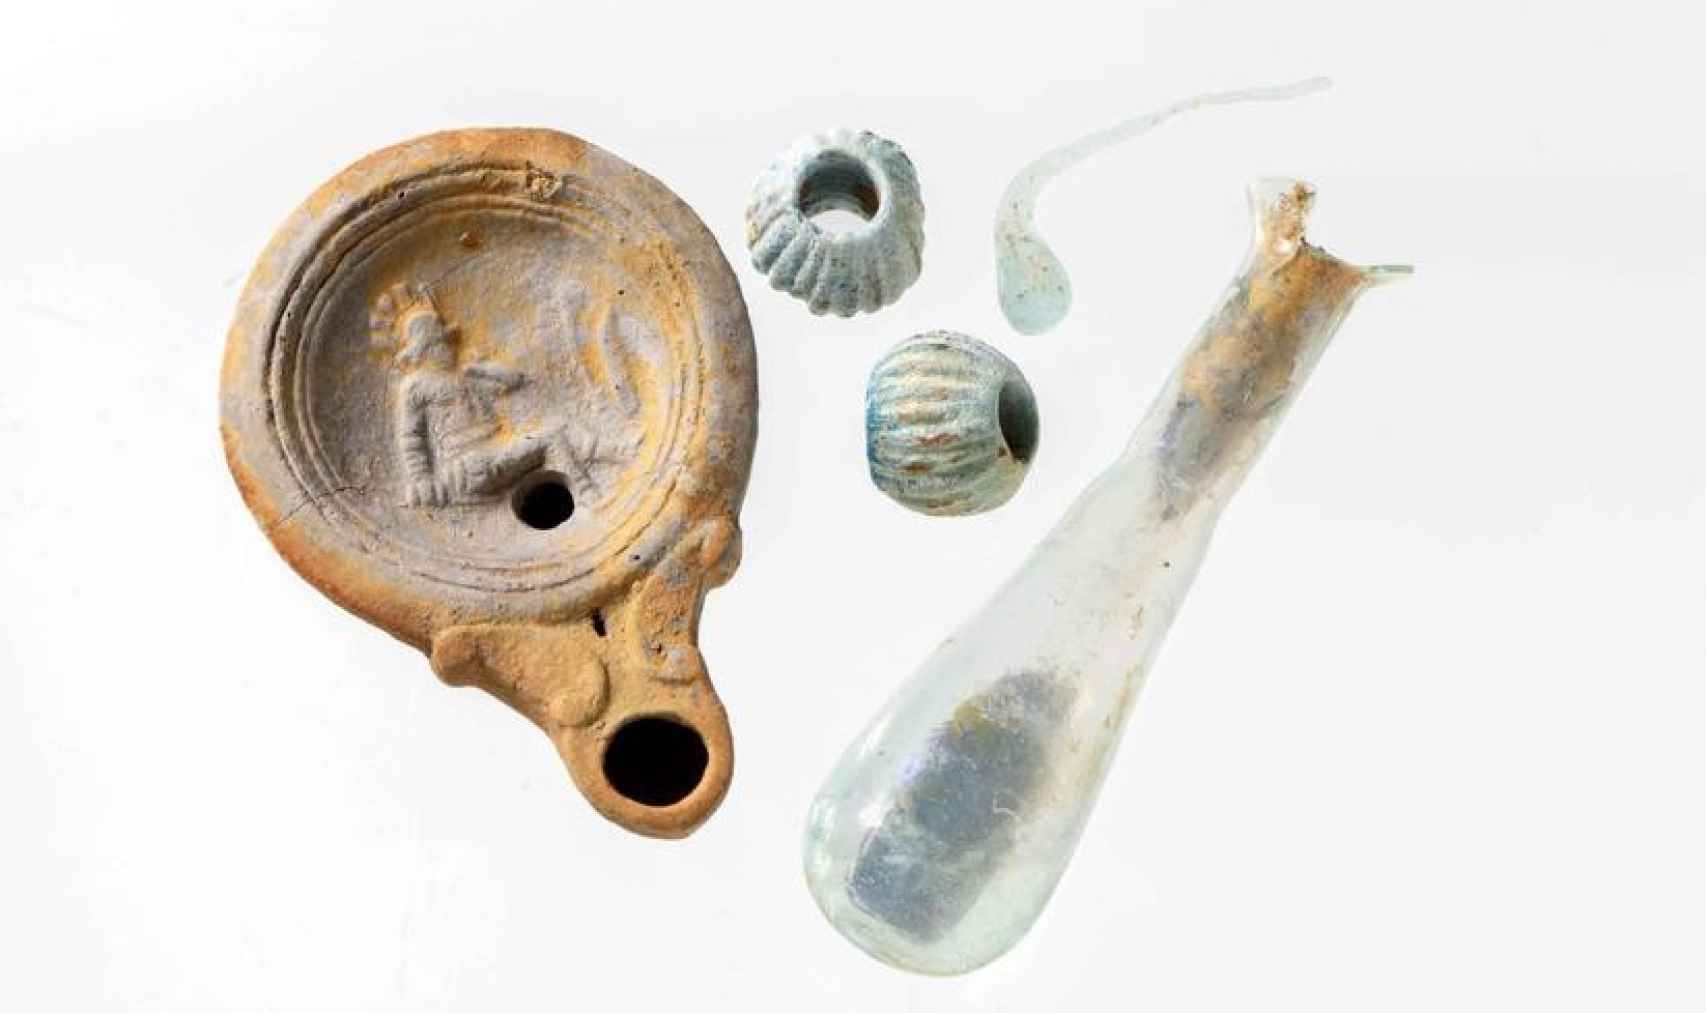 La lámpara con la imagen del gladiador derrotado y otros objetos hallados en el sitio.